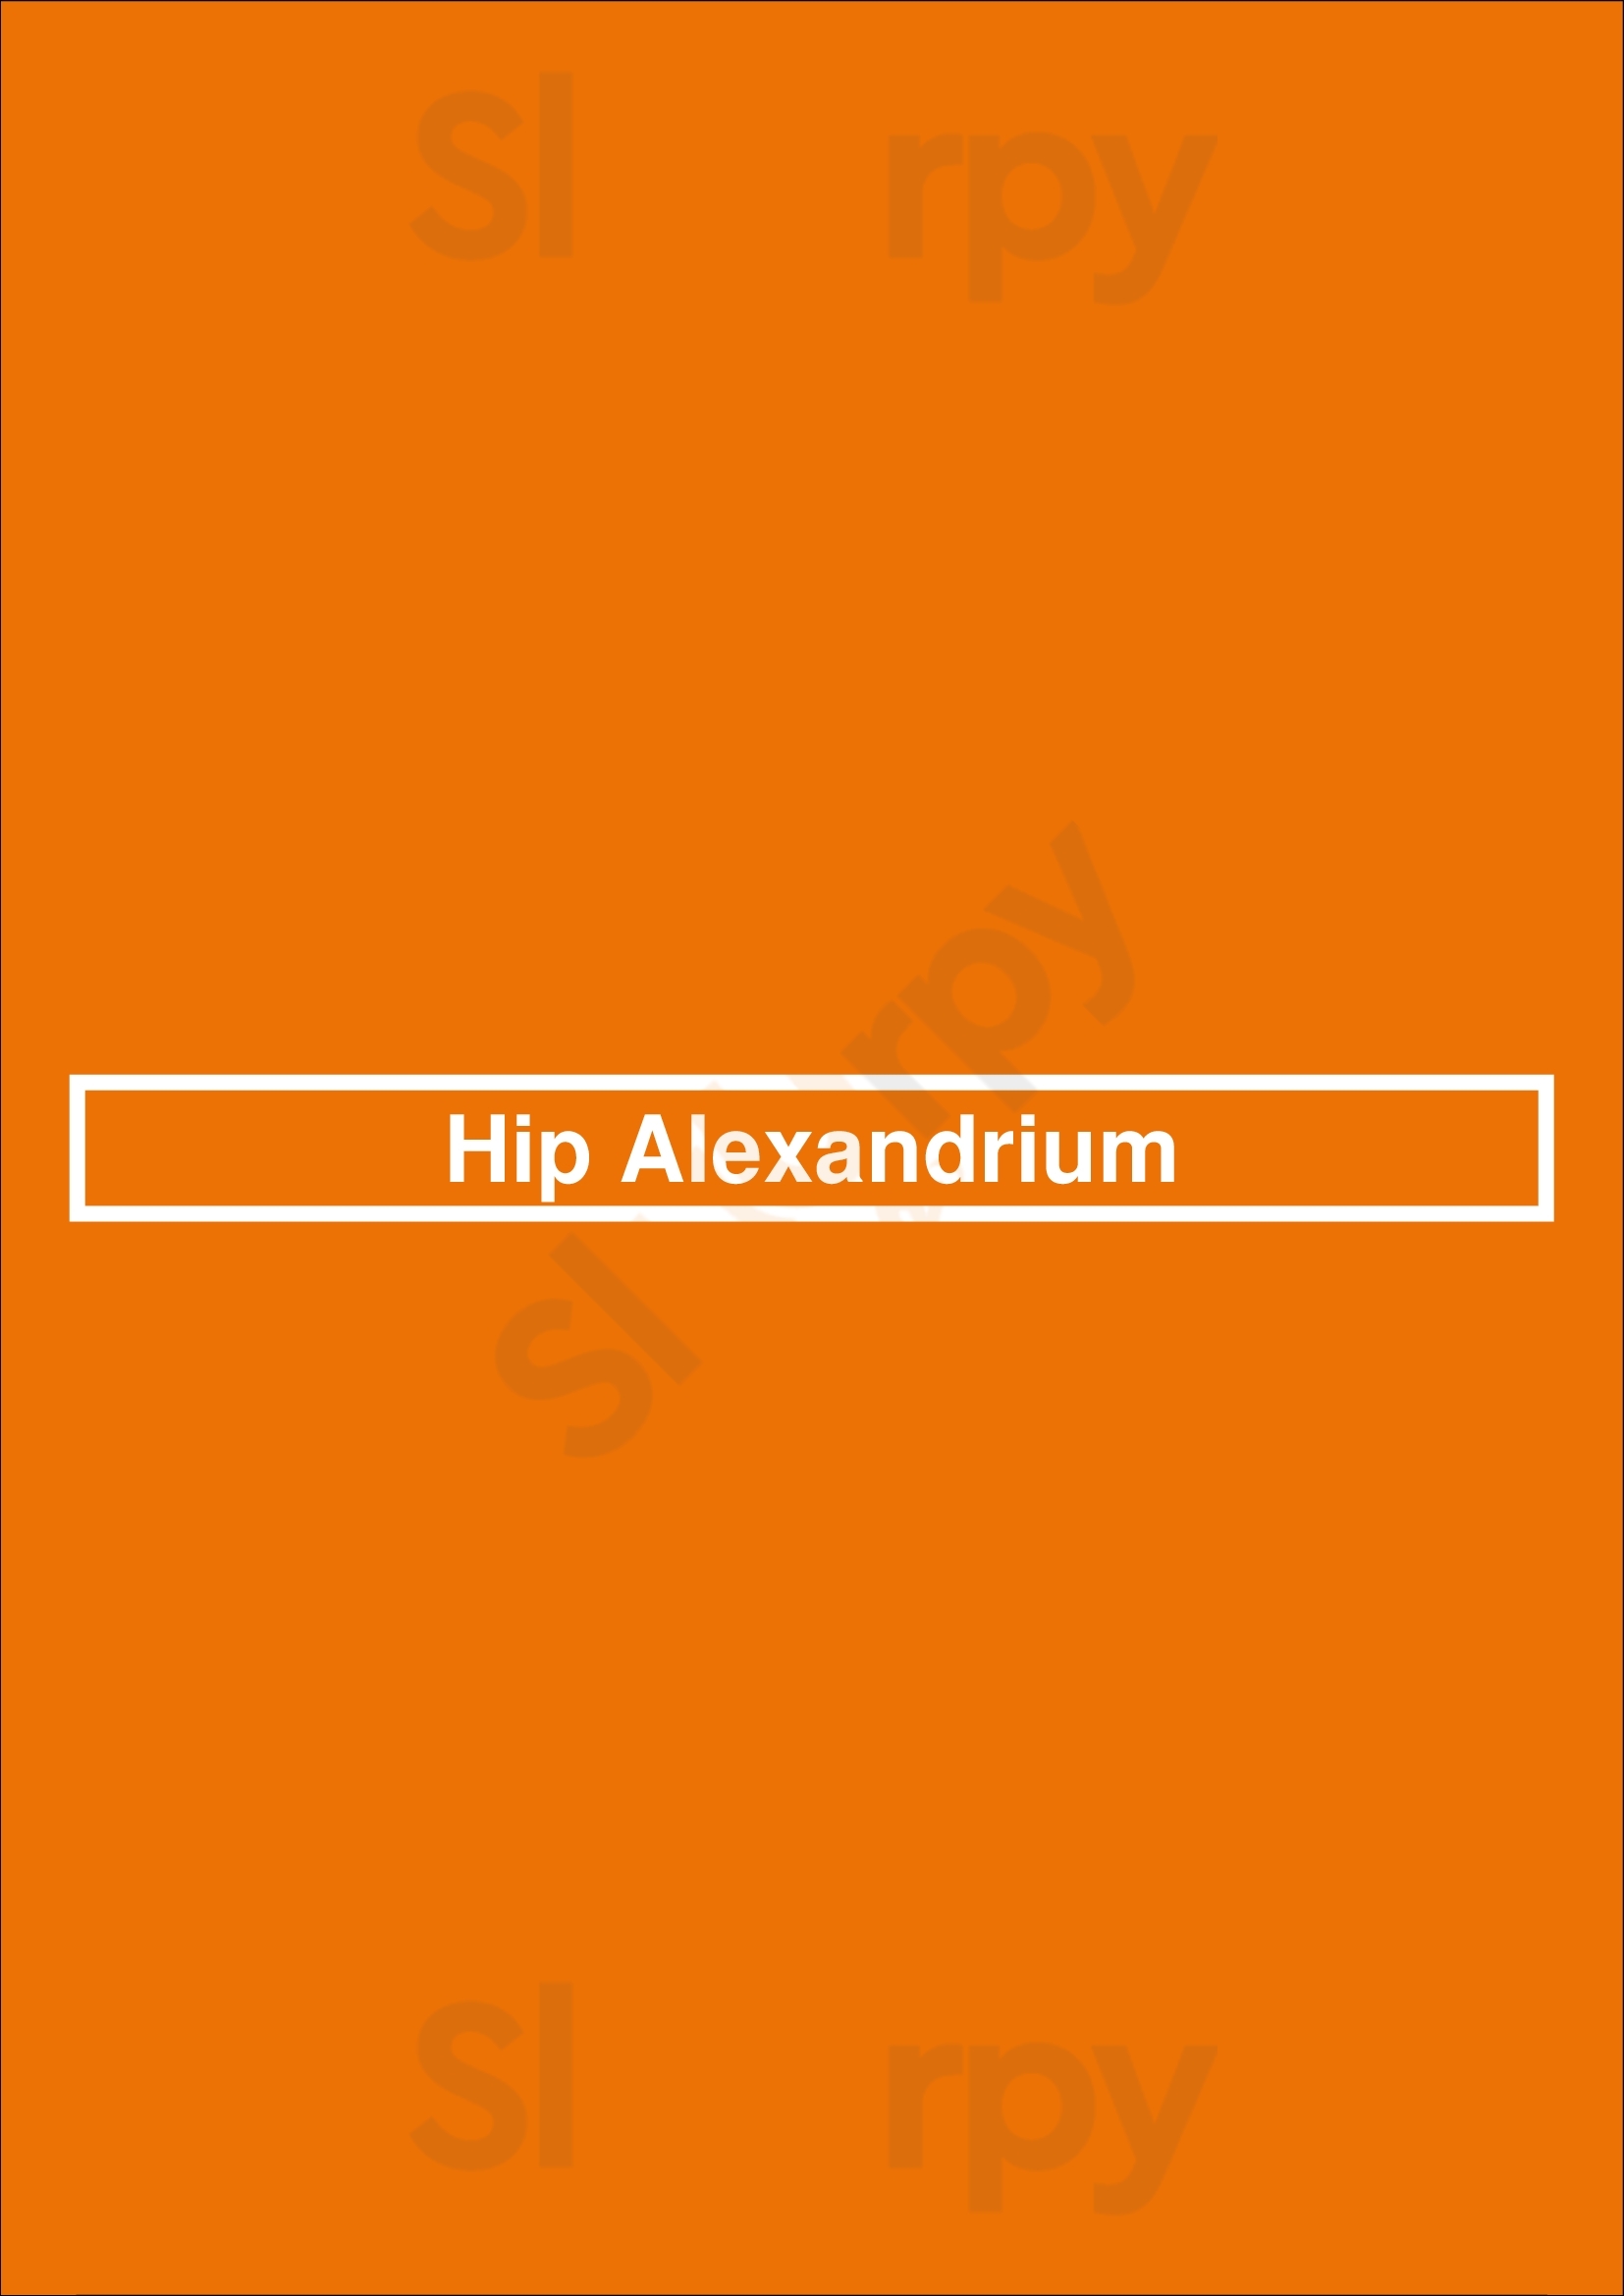 Hip Alexandrium Rotterdam Menu - 1